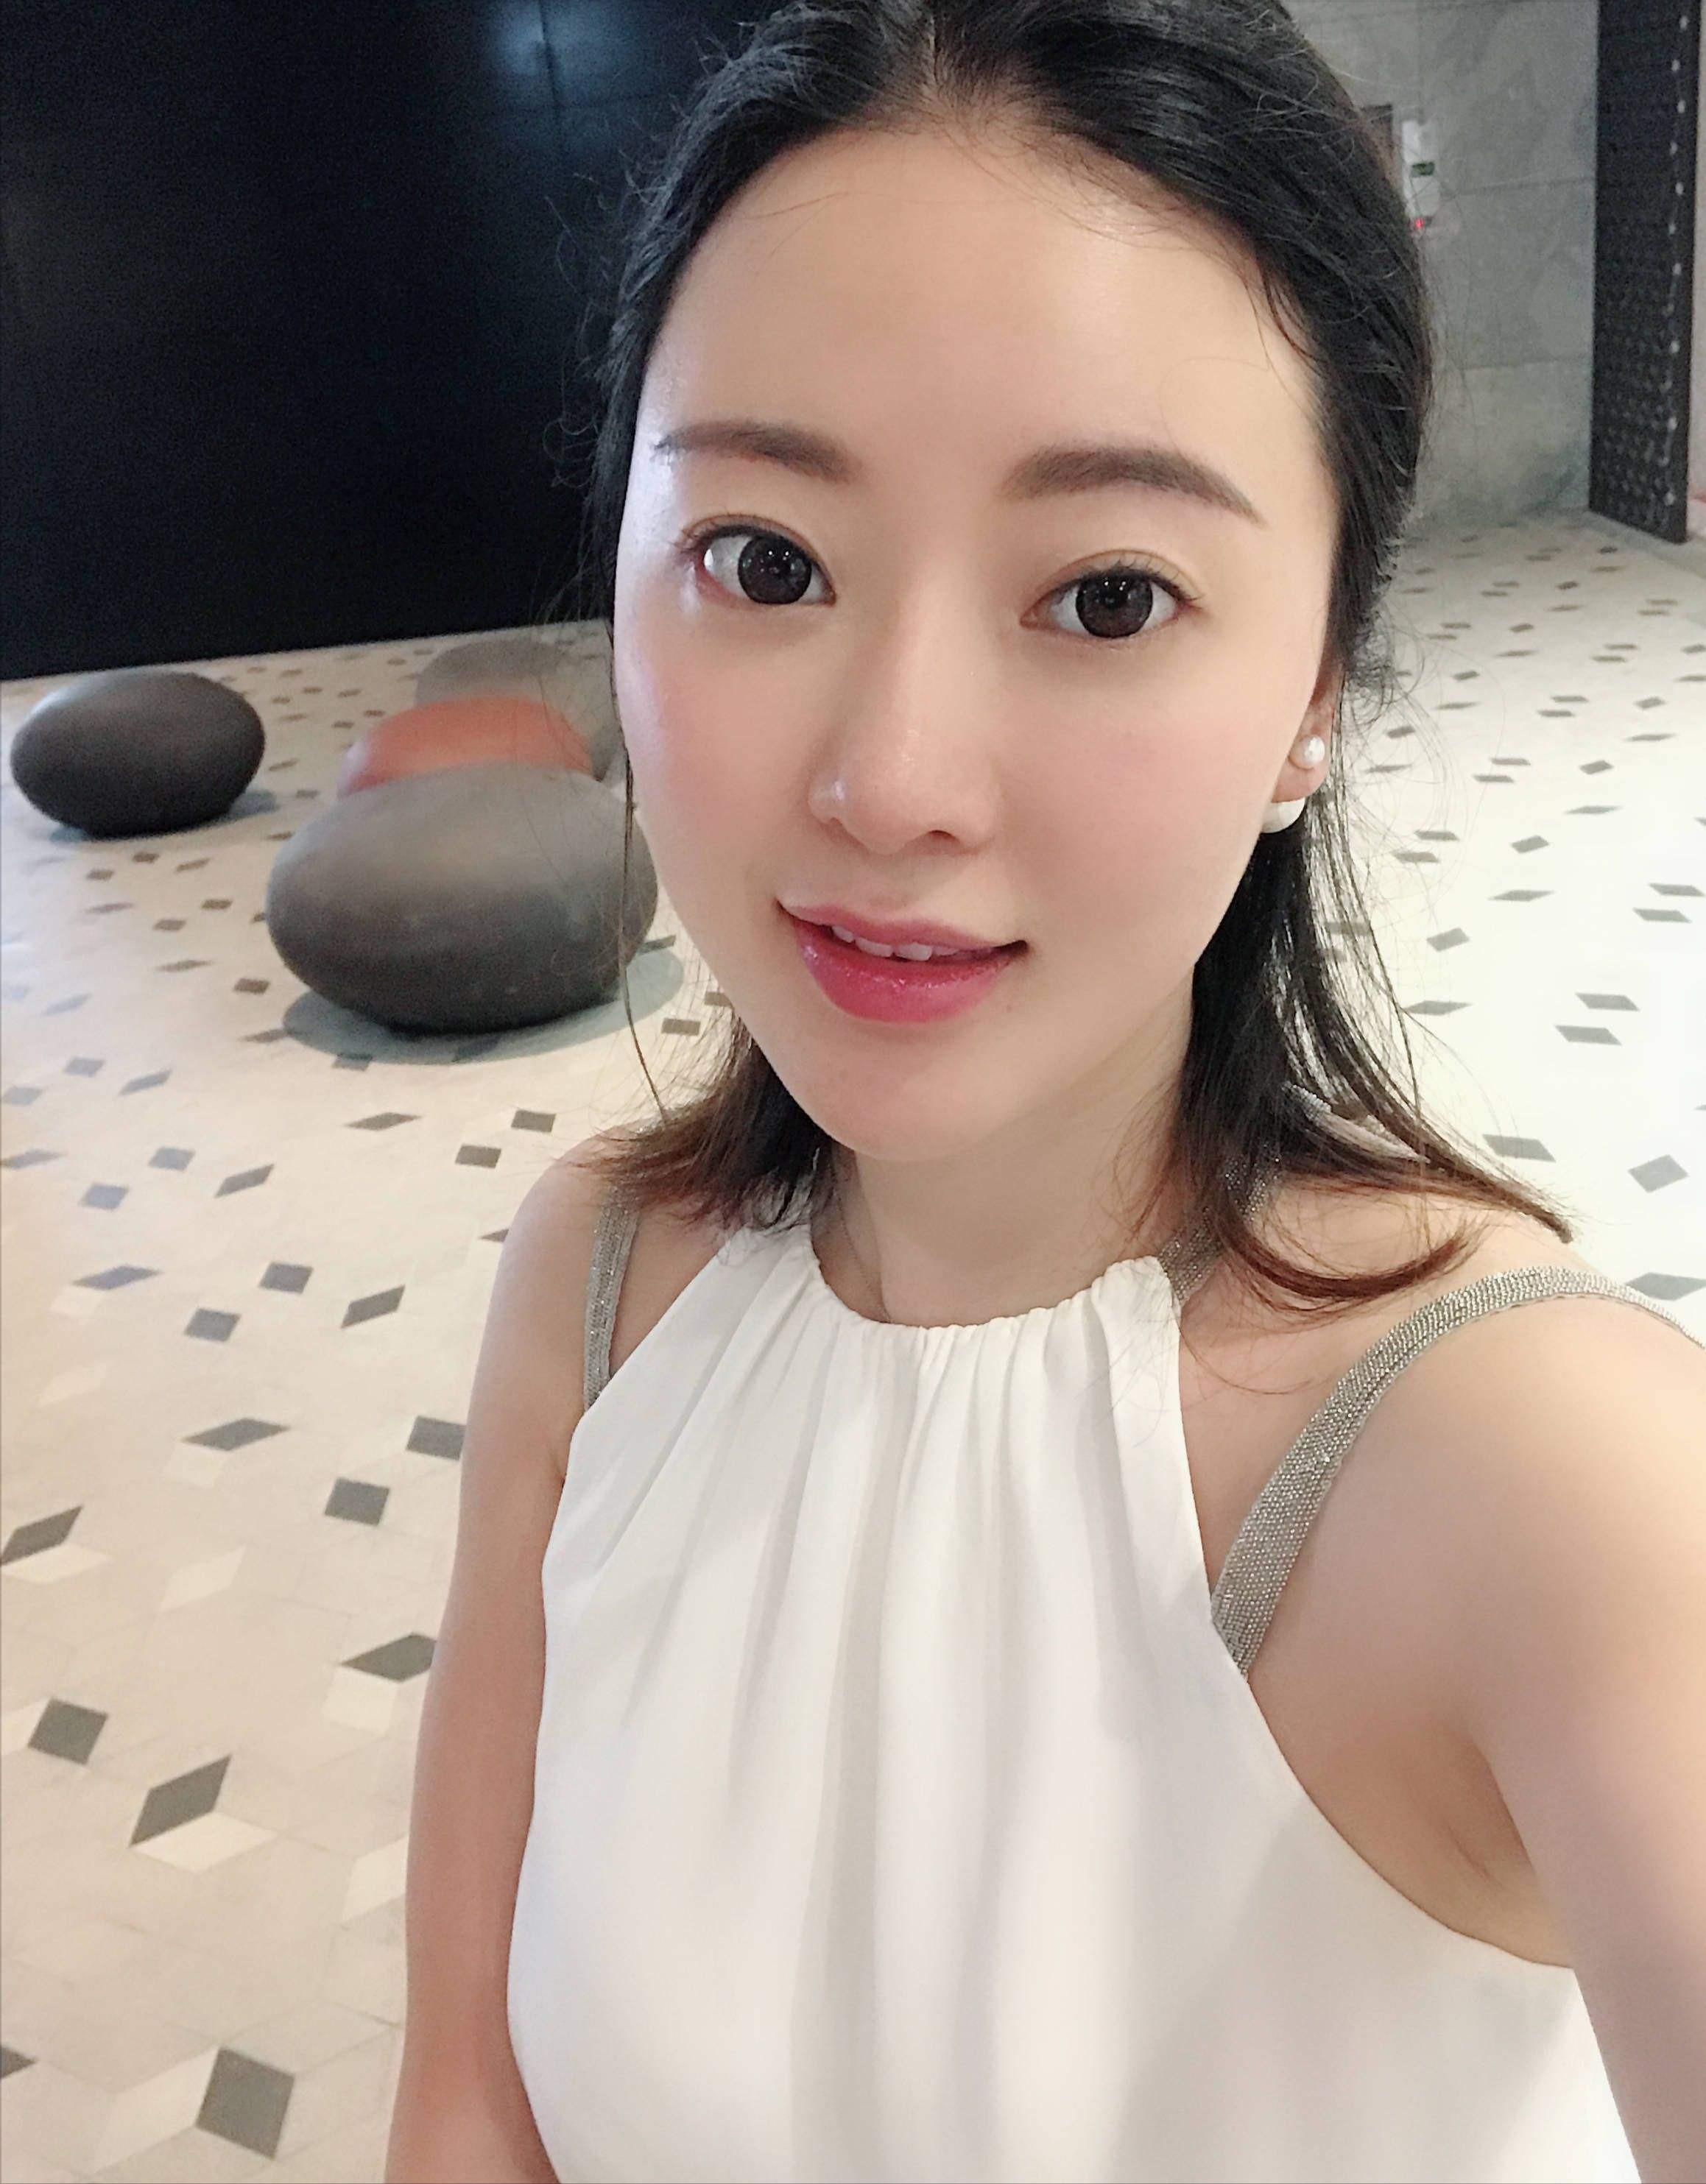 她因刘强东走红,如今定居国外生活奢华,34岁的人依然美丽动人